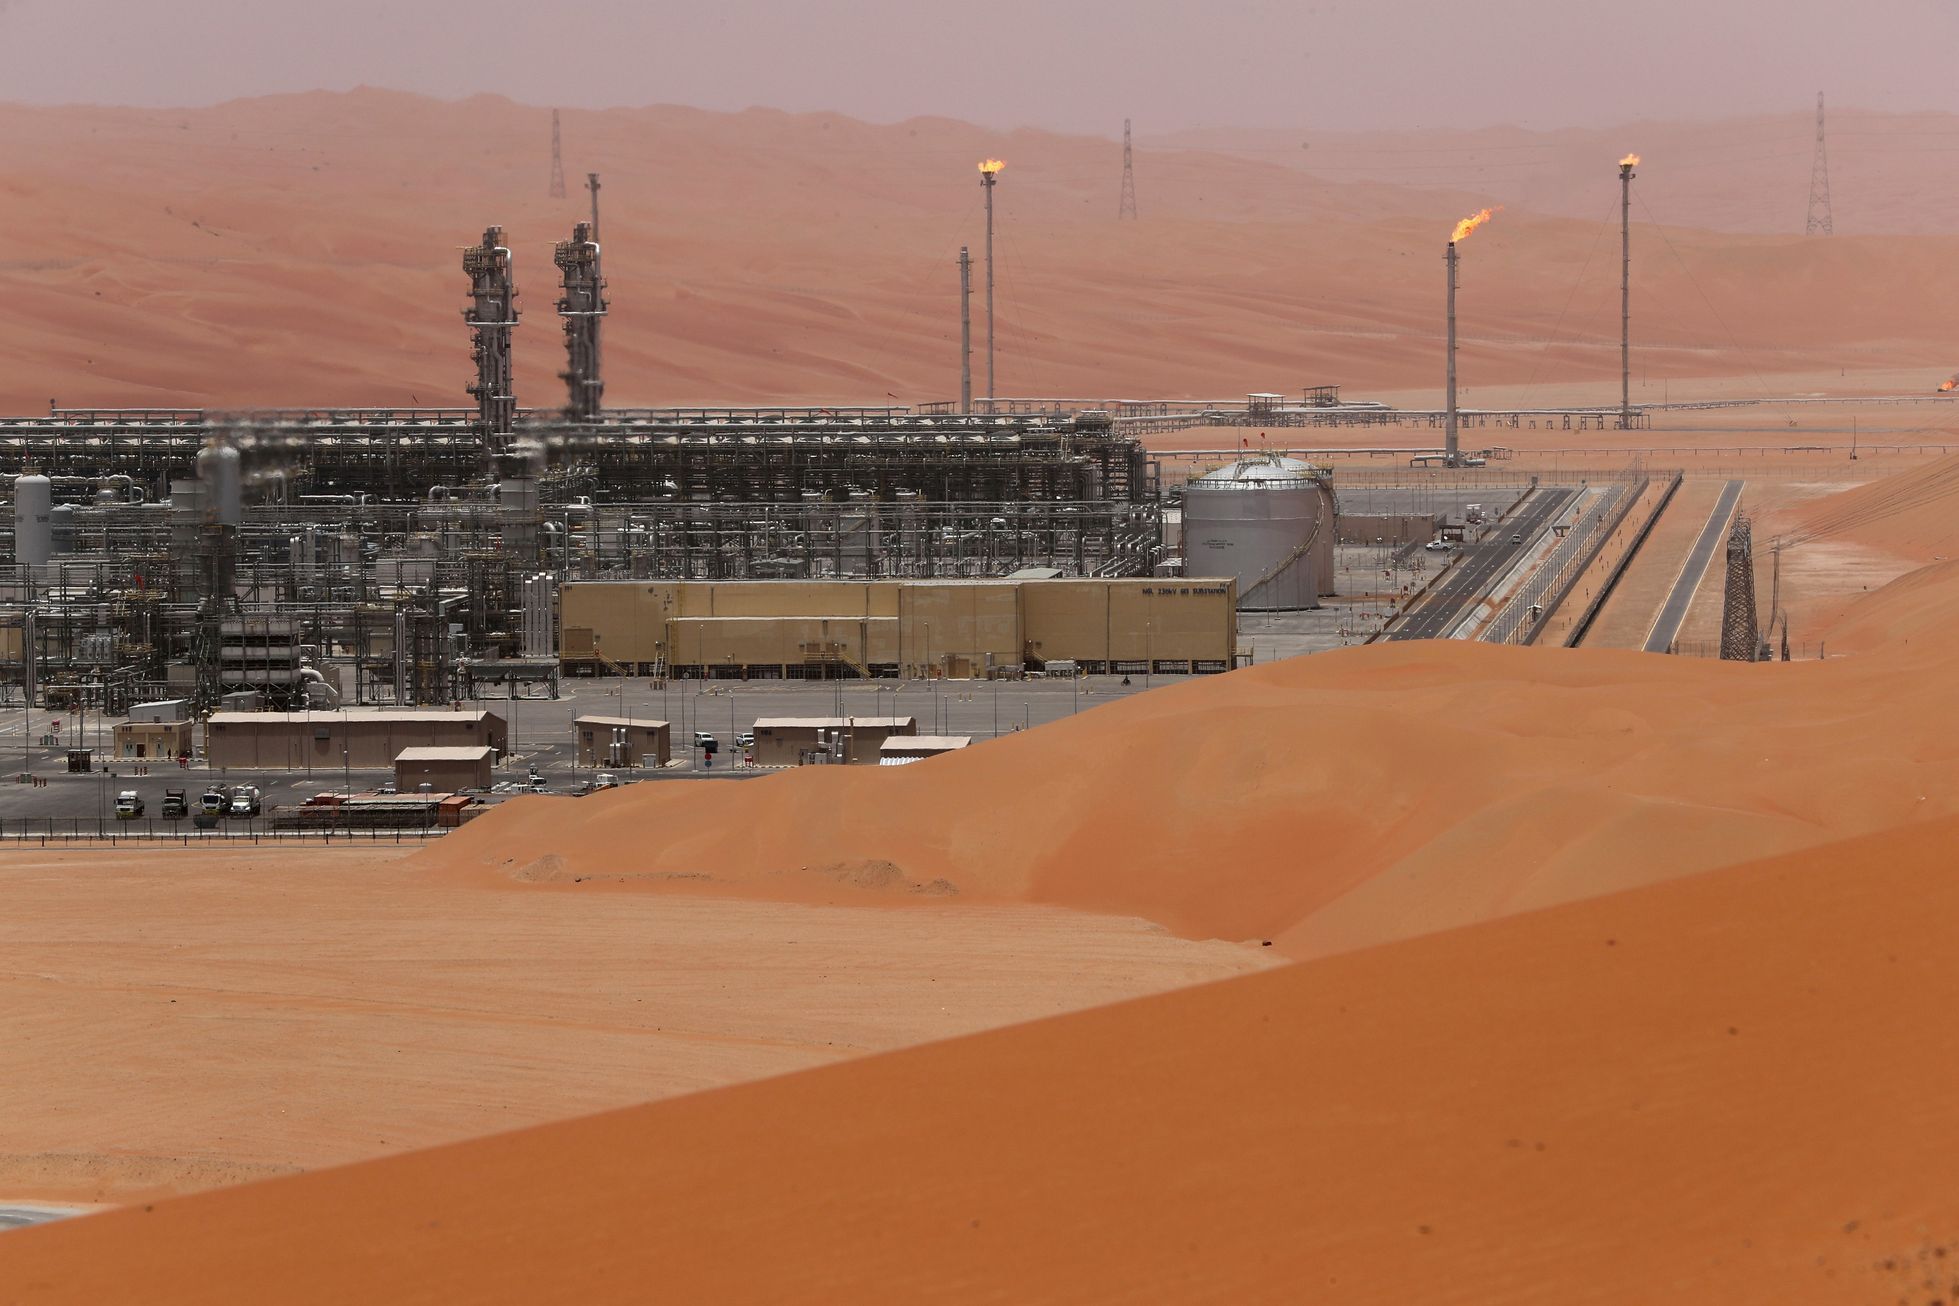 Saúdskoarabská ropná plošina Aramco's Shaybah